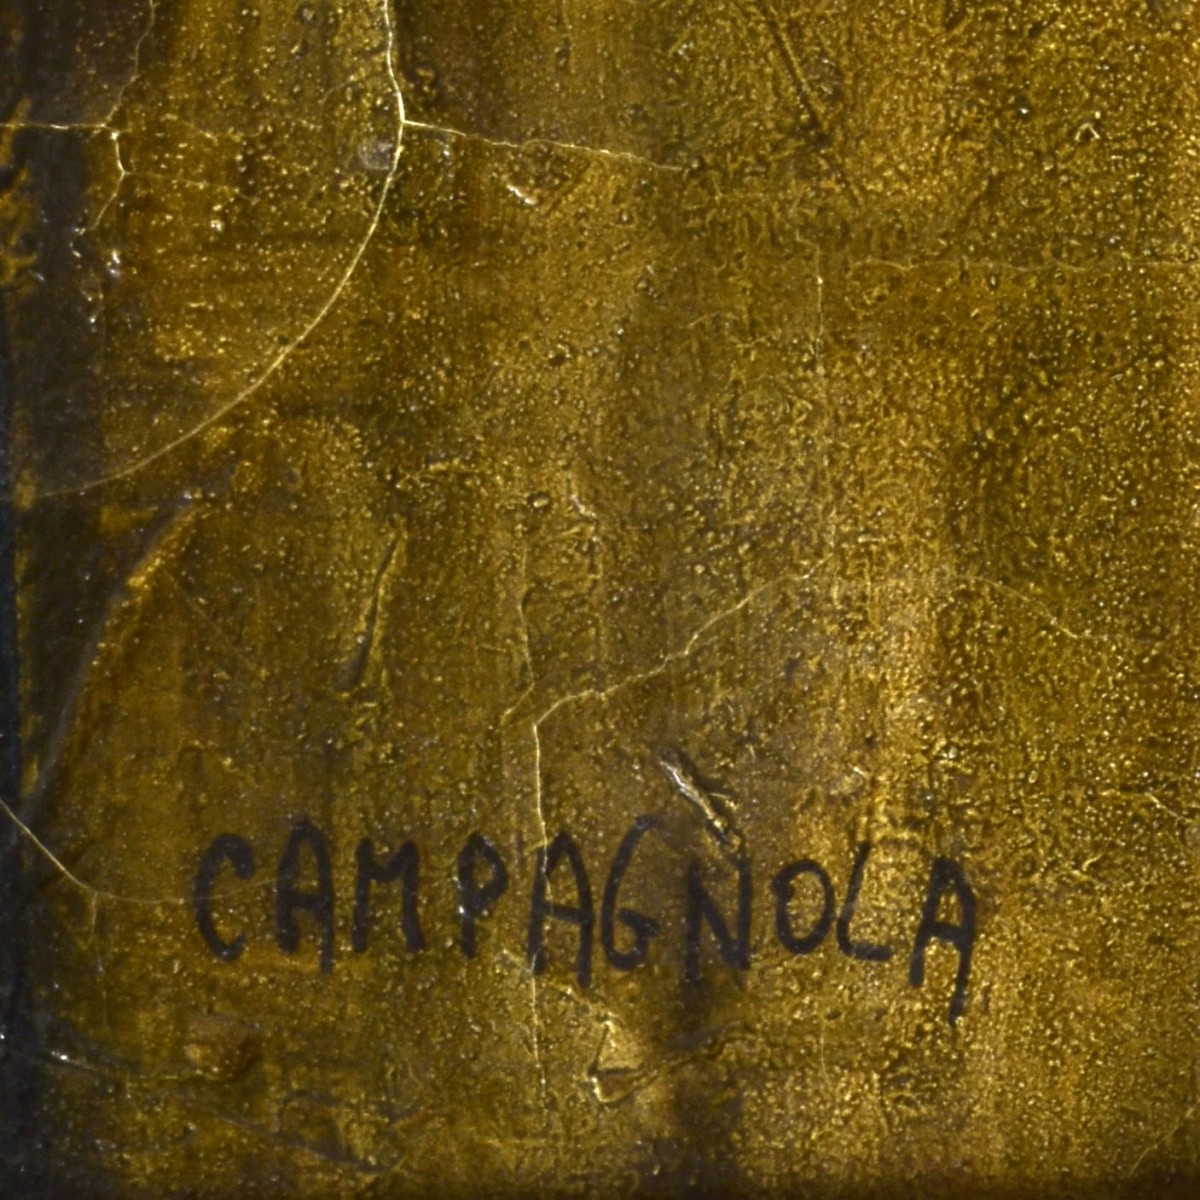 Enrico Campagnola (1911 - 1984)